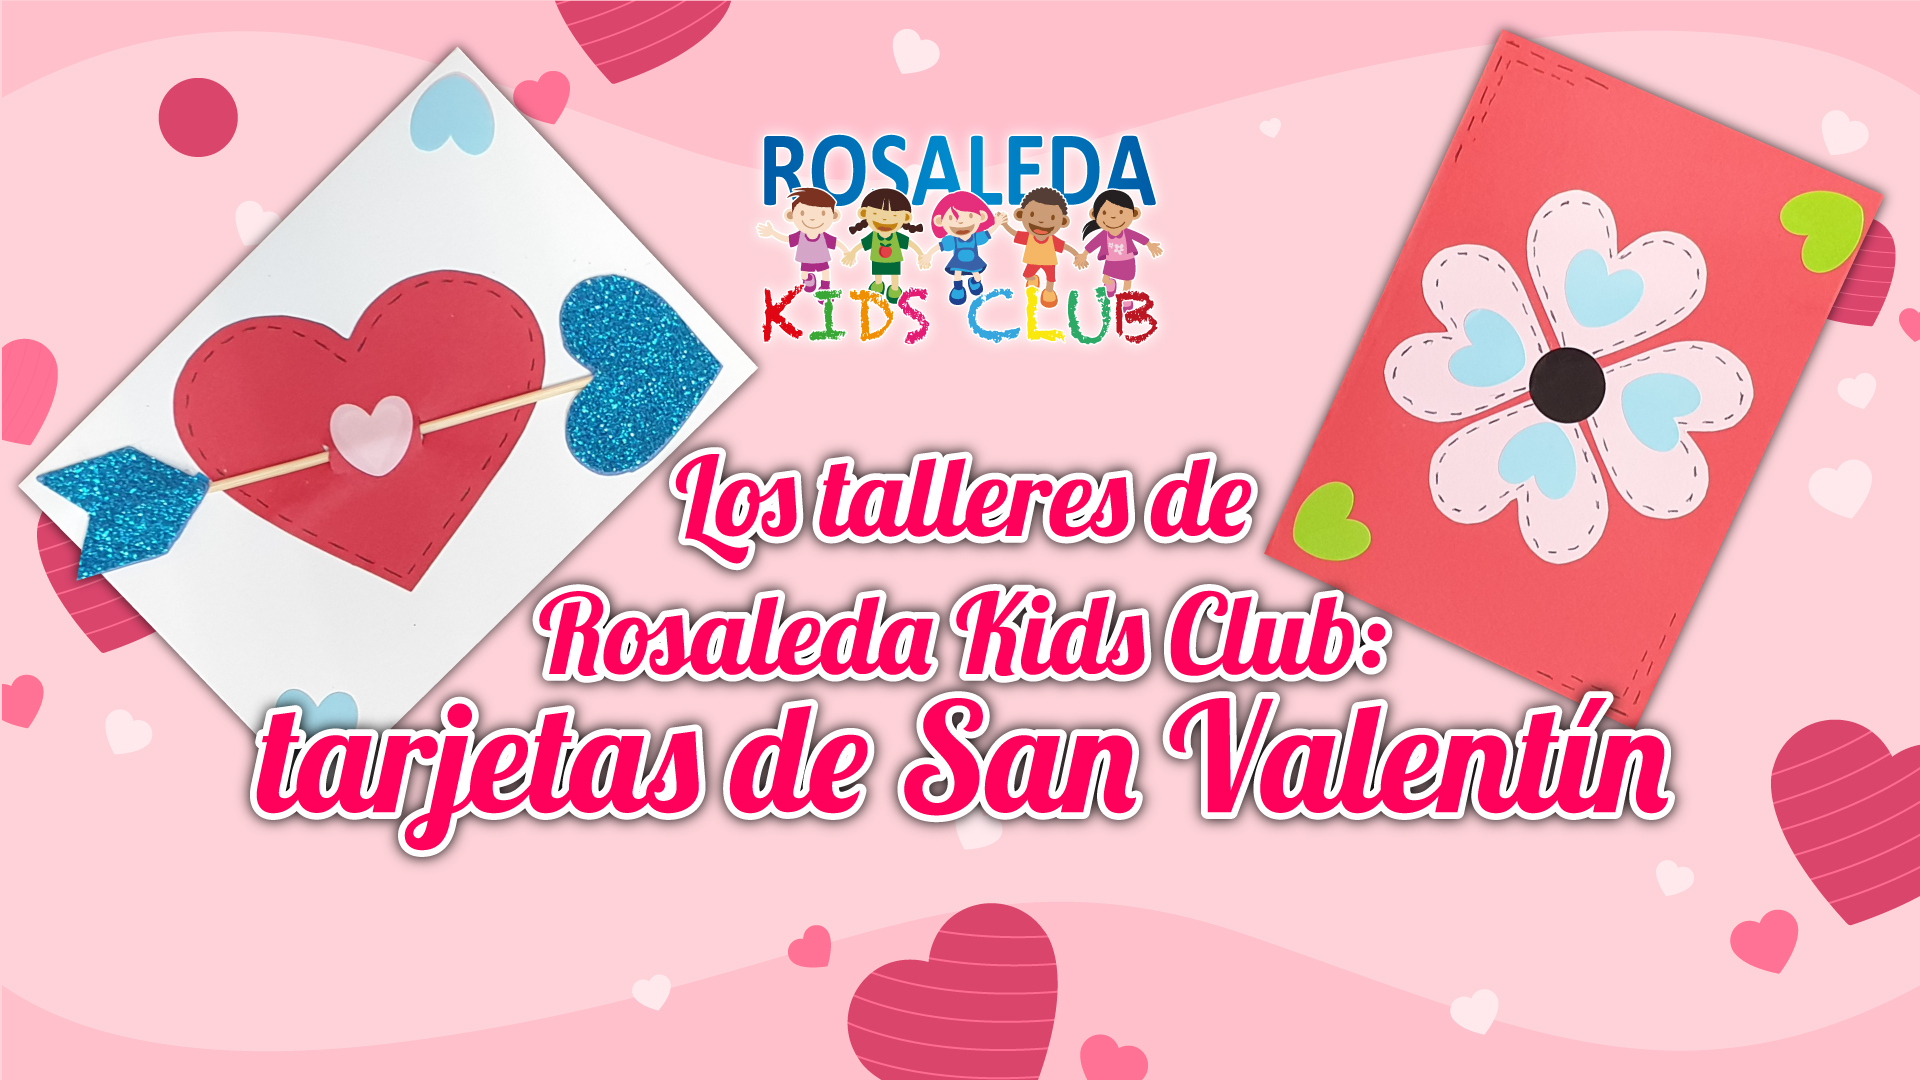 RKC tarjetas de San Valentín